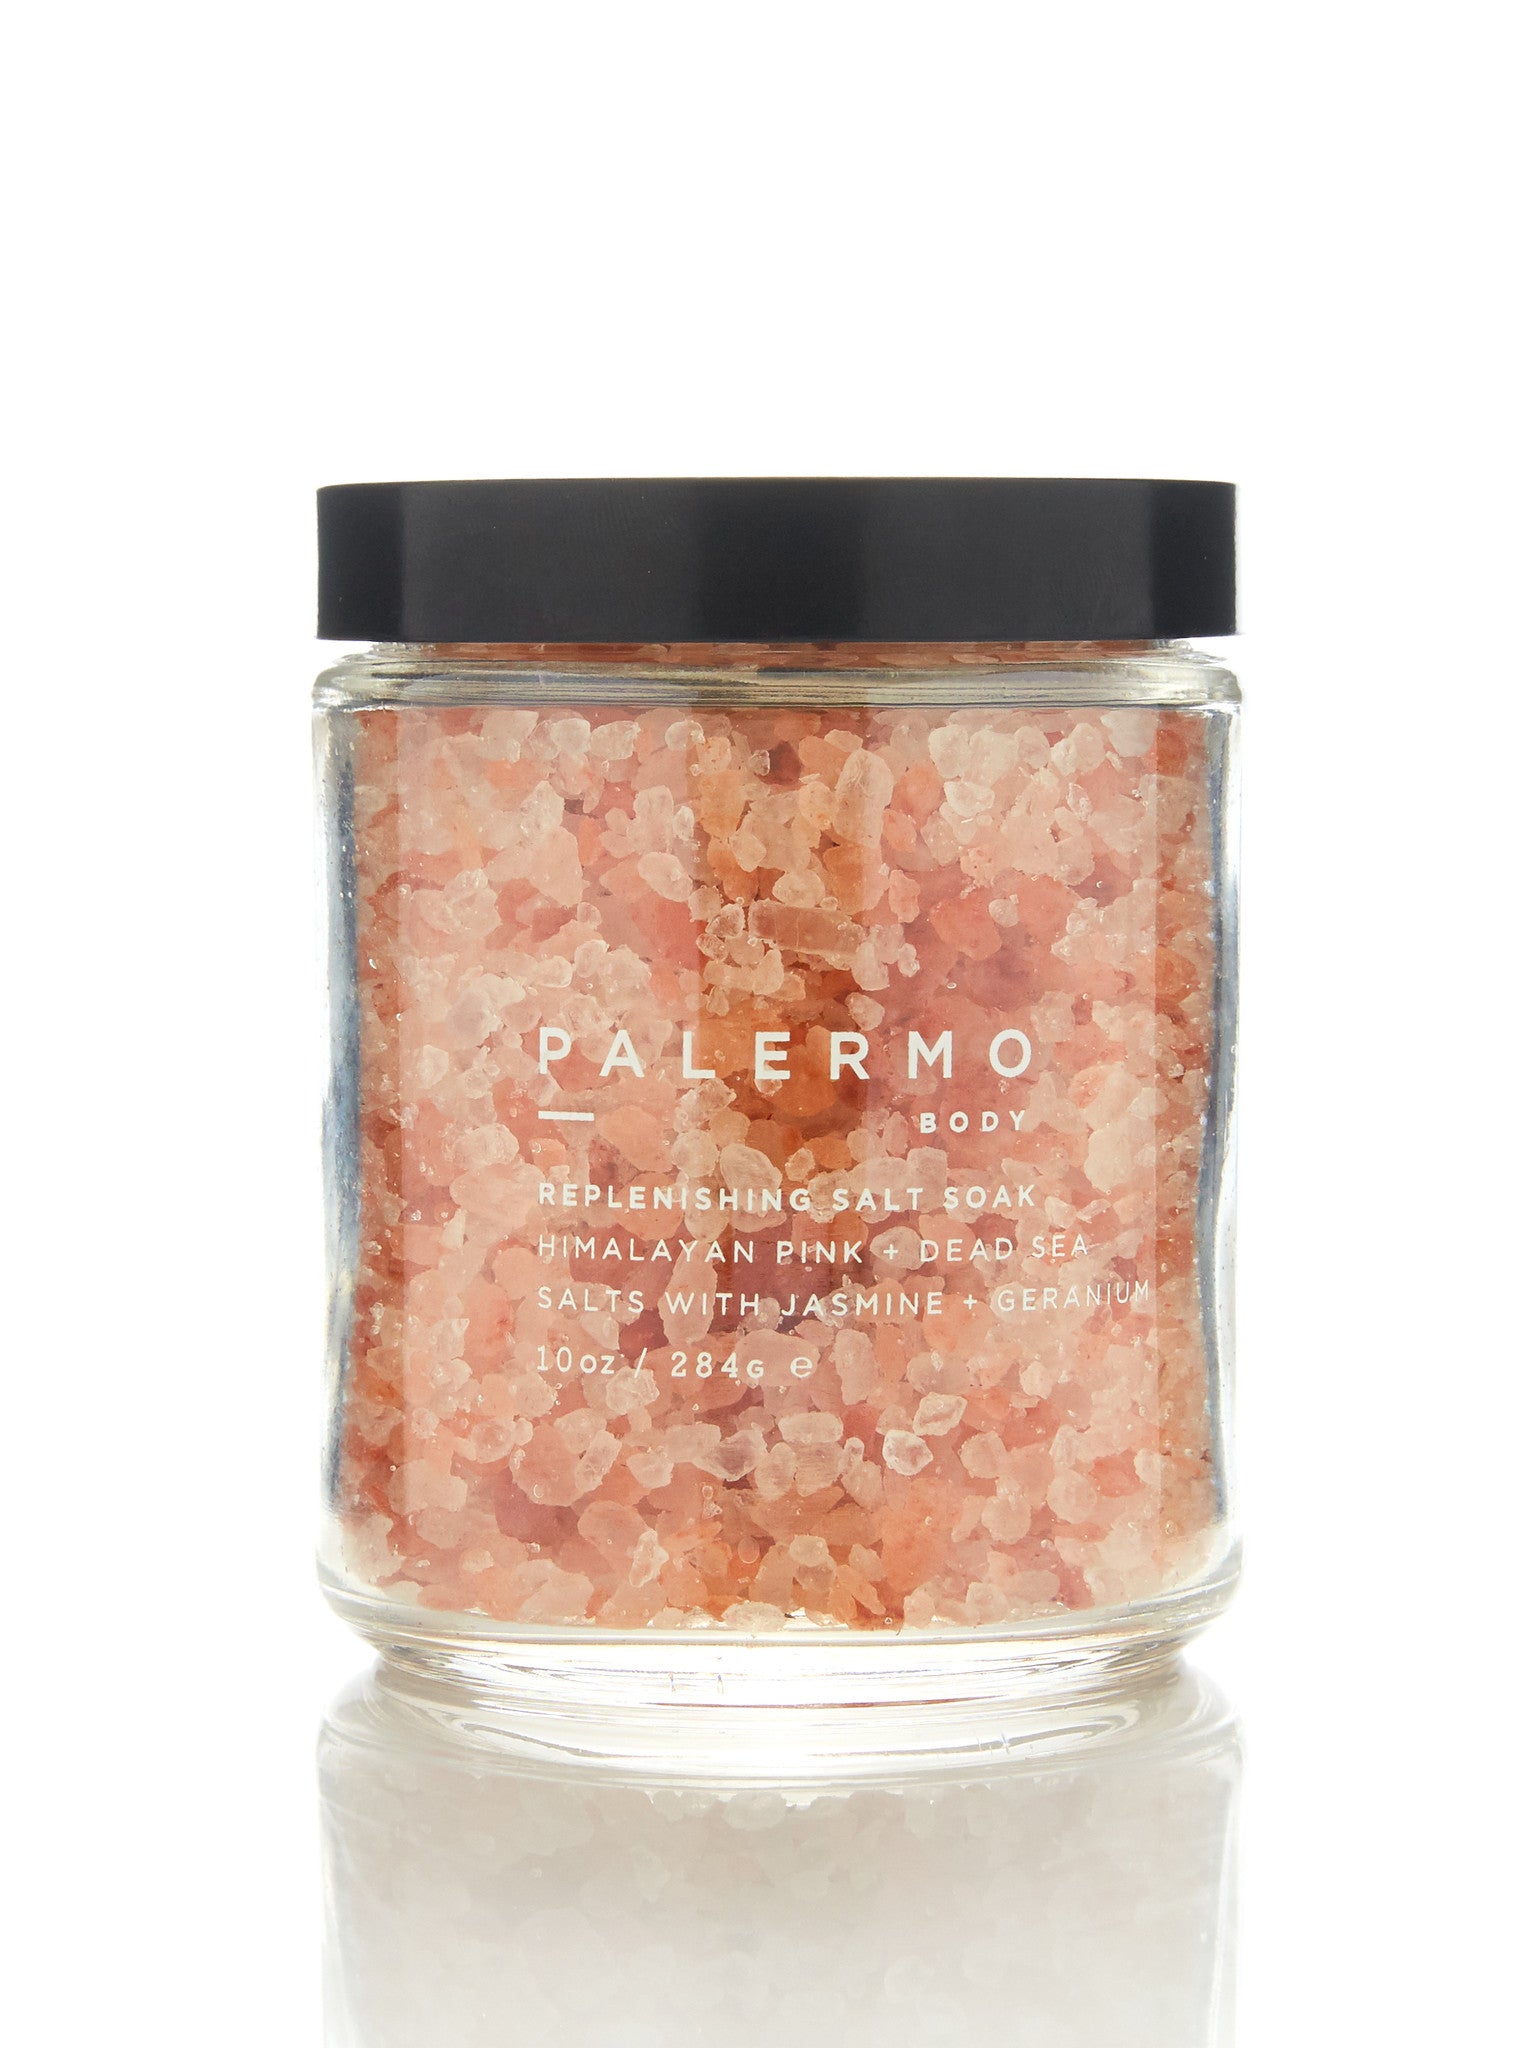 Replenishing Salt Soak Palermo Body 